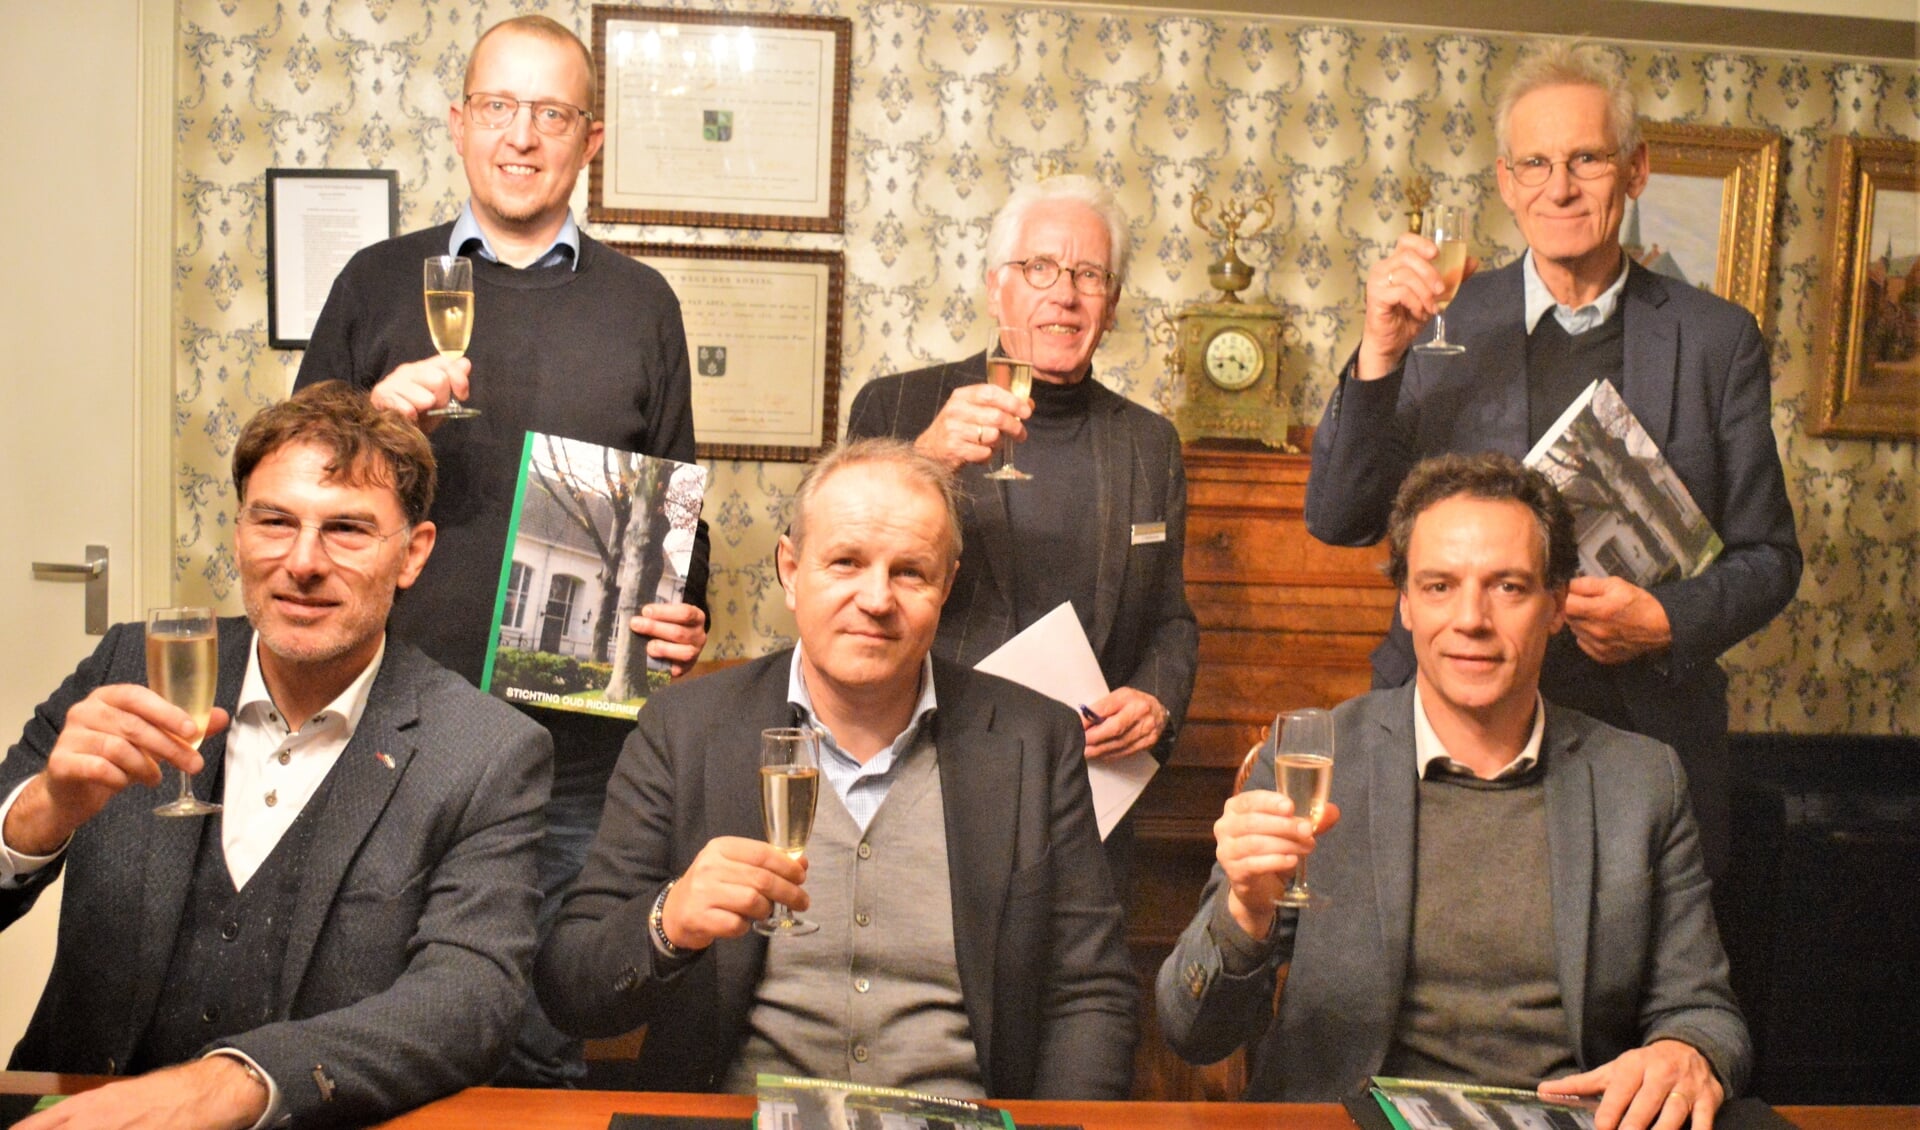 Champagne na nieuwe contracten: v.l.n.r. Dionysios Sofronas (Aardhoom), René Freriks (Trelleborg), Martijn Punt (Quooker) met daarachter Niels Plaisier (Plaisier), Jan Verhoeven (Oud Ridderkerk) en Anco T. Noordhuis (Rolas)